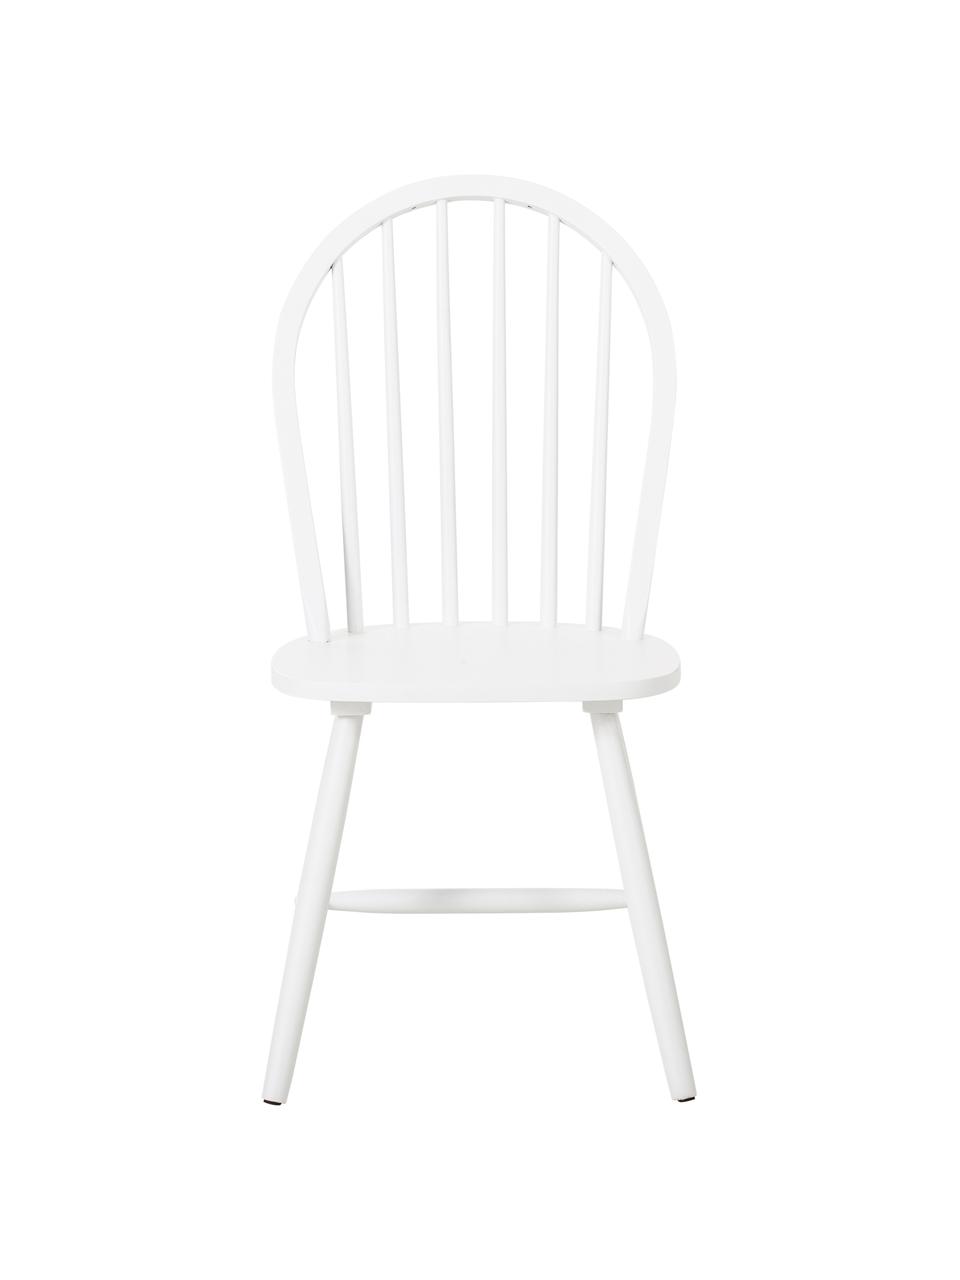 Windsor-Holzstühle Megan in Weiß, 2 Stück, Kautschukholz, lackiert, Weiß, B 46 x T 51 cm